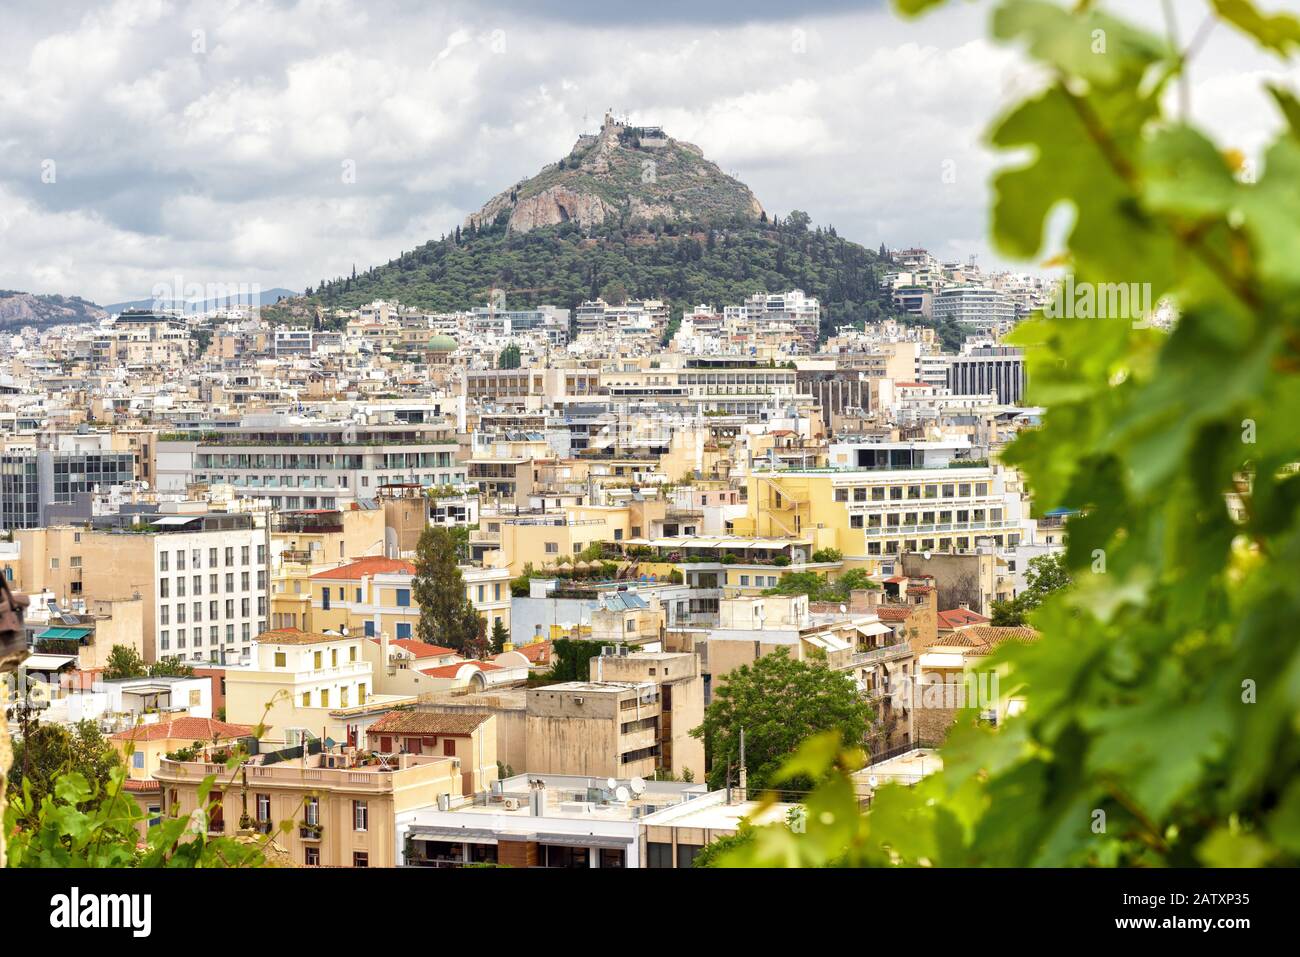 Vista panoramica di Atene e del Monte Lycabettus dal versante dell'Acropoli, Grecia. Panorama di Atene dall'alto in estate. La collina rocciosa sorge sopra la città. Foto Stock